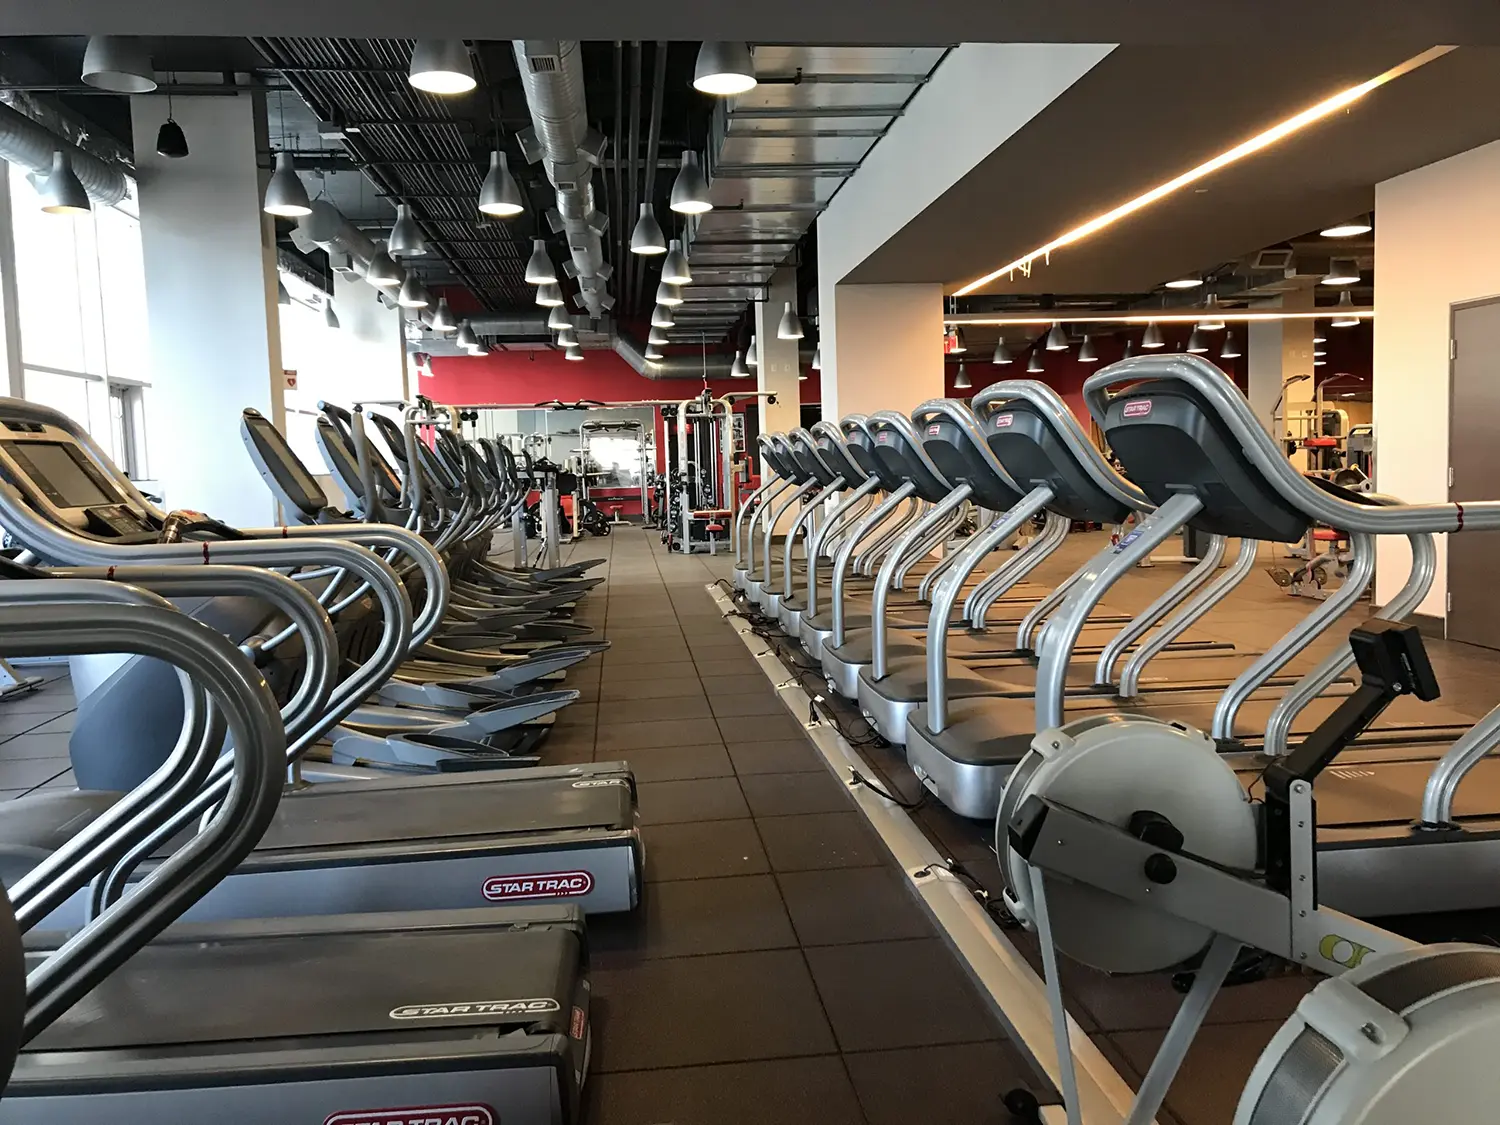 treadmill area -higherground